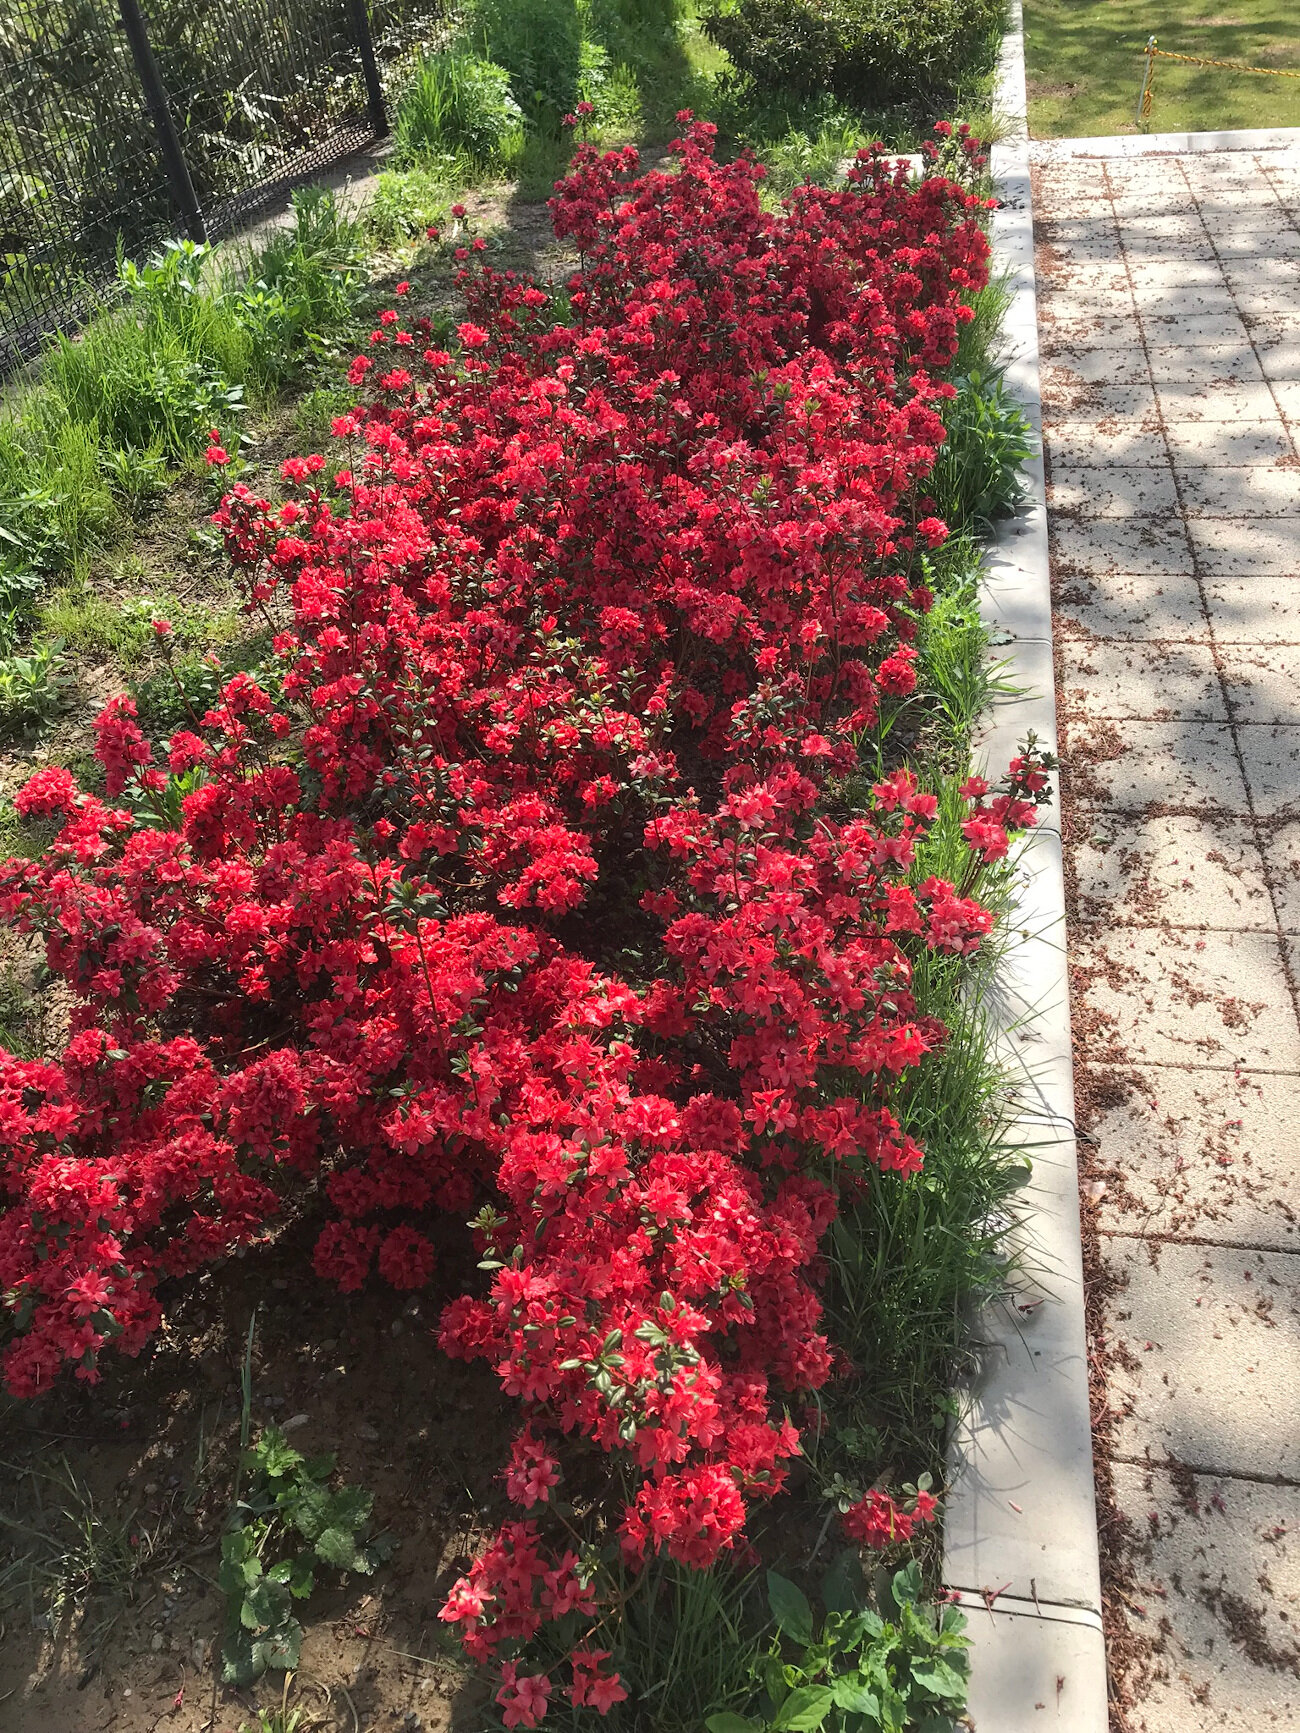 Red Flowering Bushes in Kanazawa